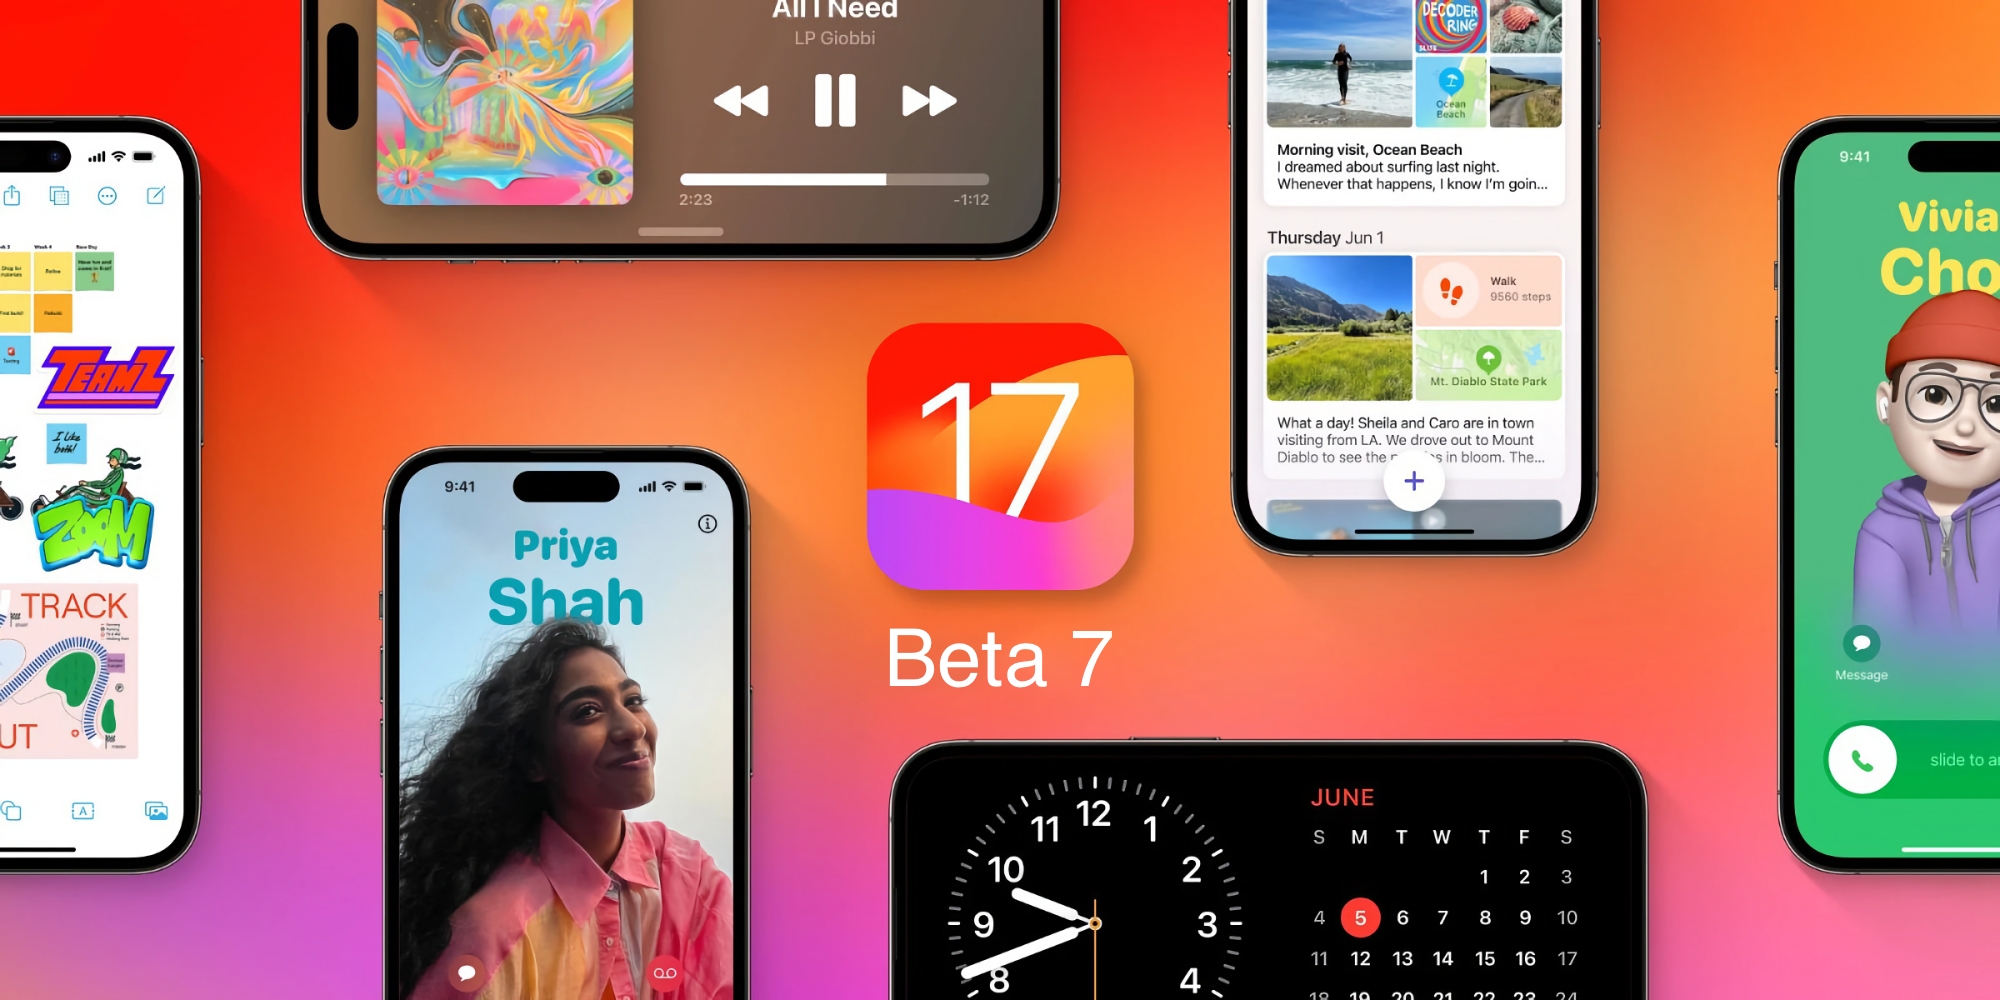 Що нового в iOS 17 Beta 7